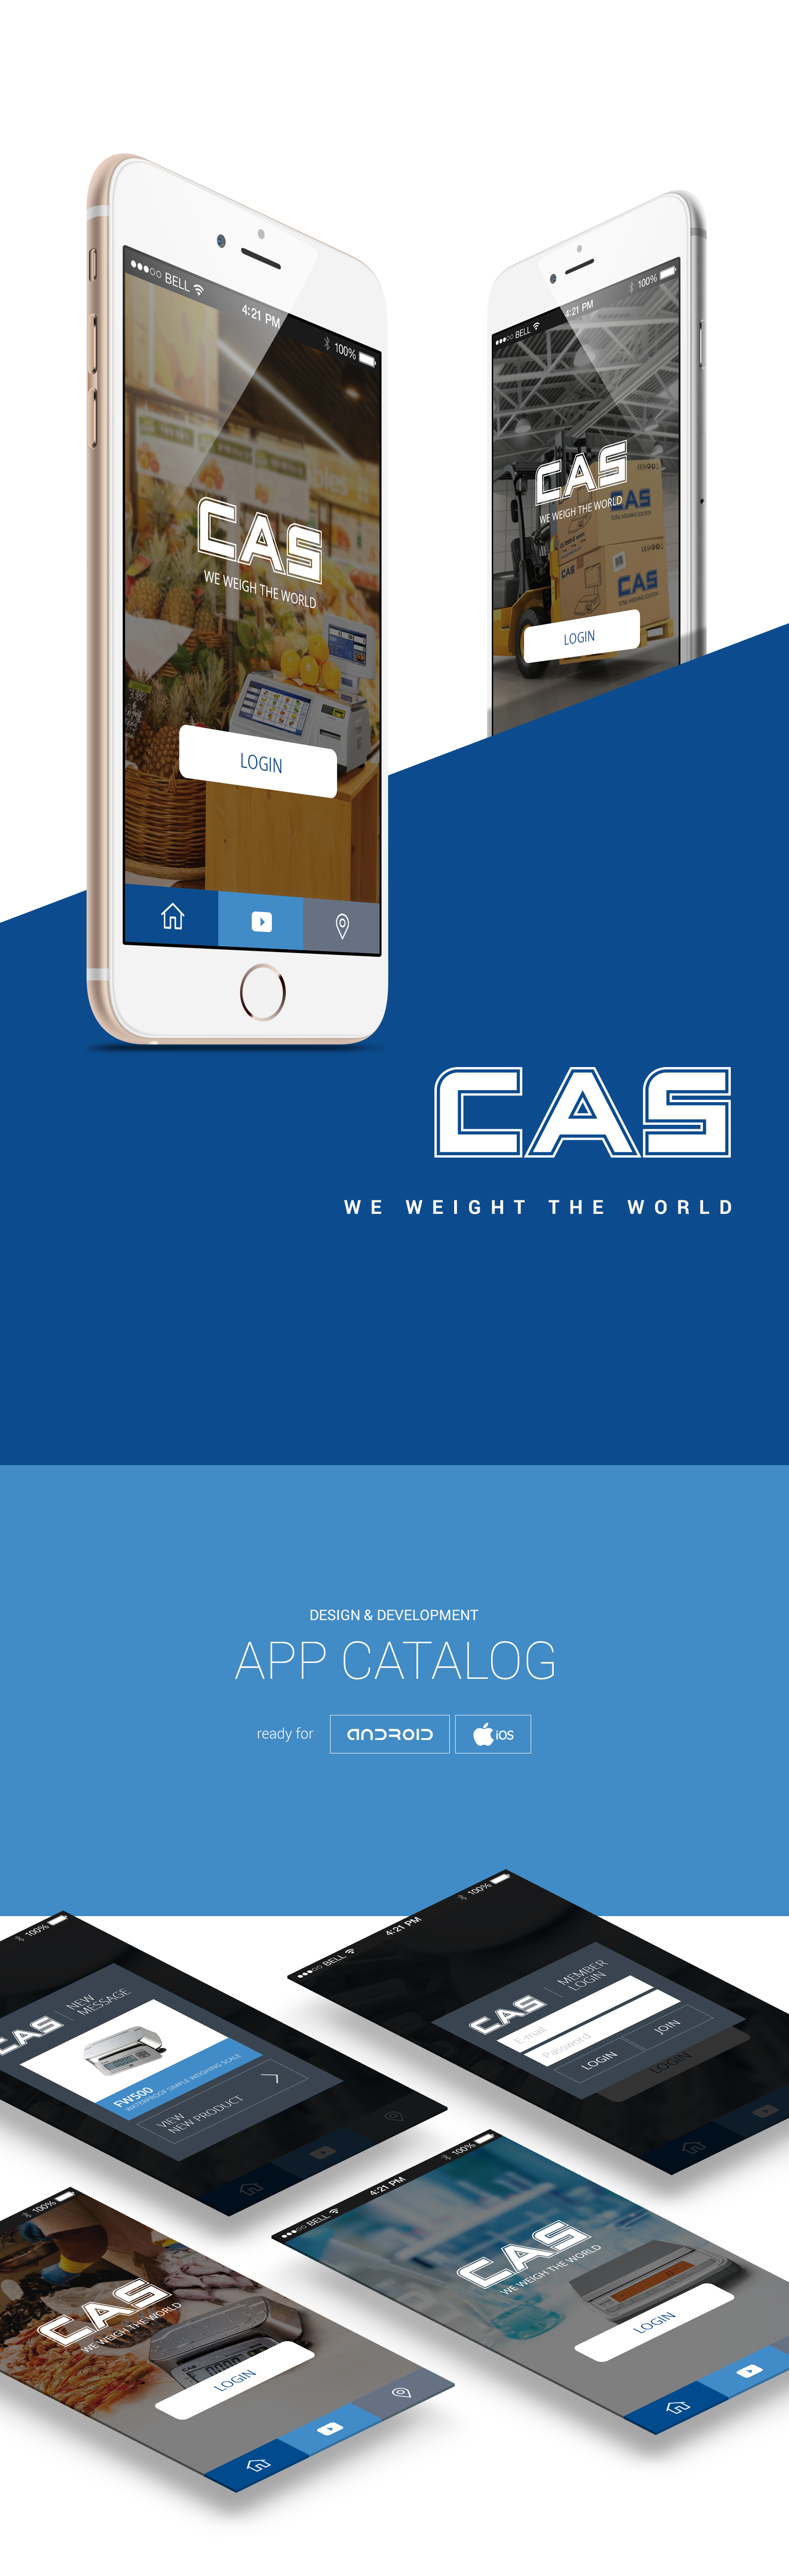 cas_catalog_application